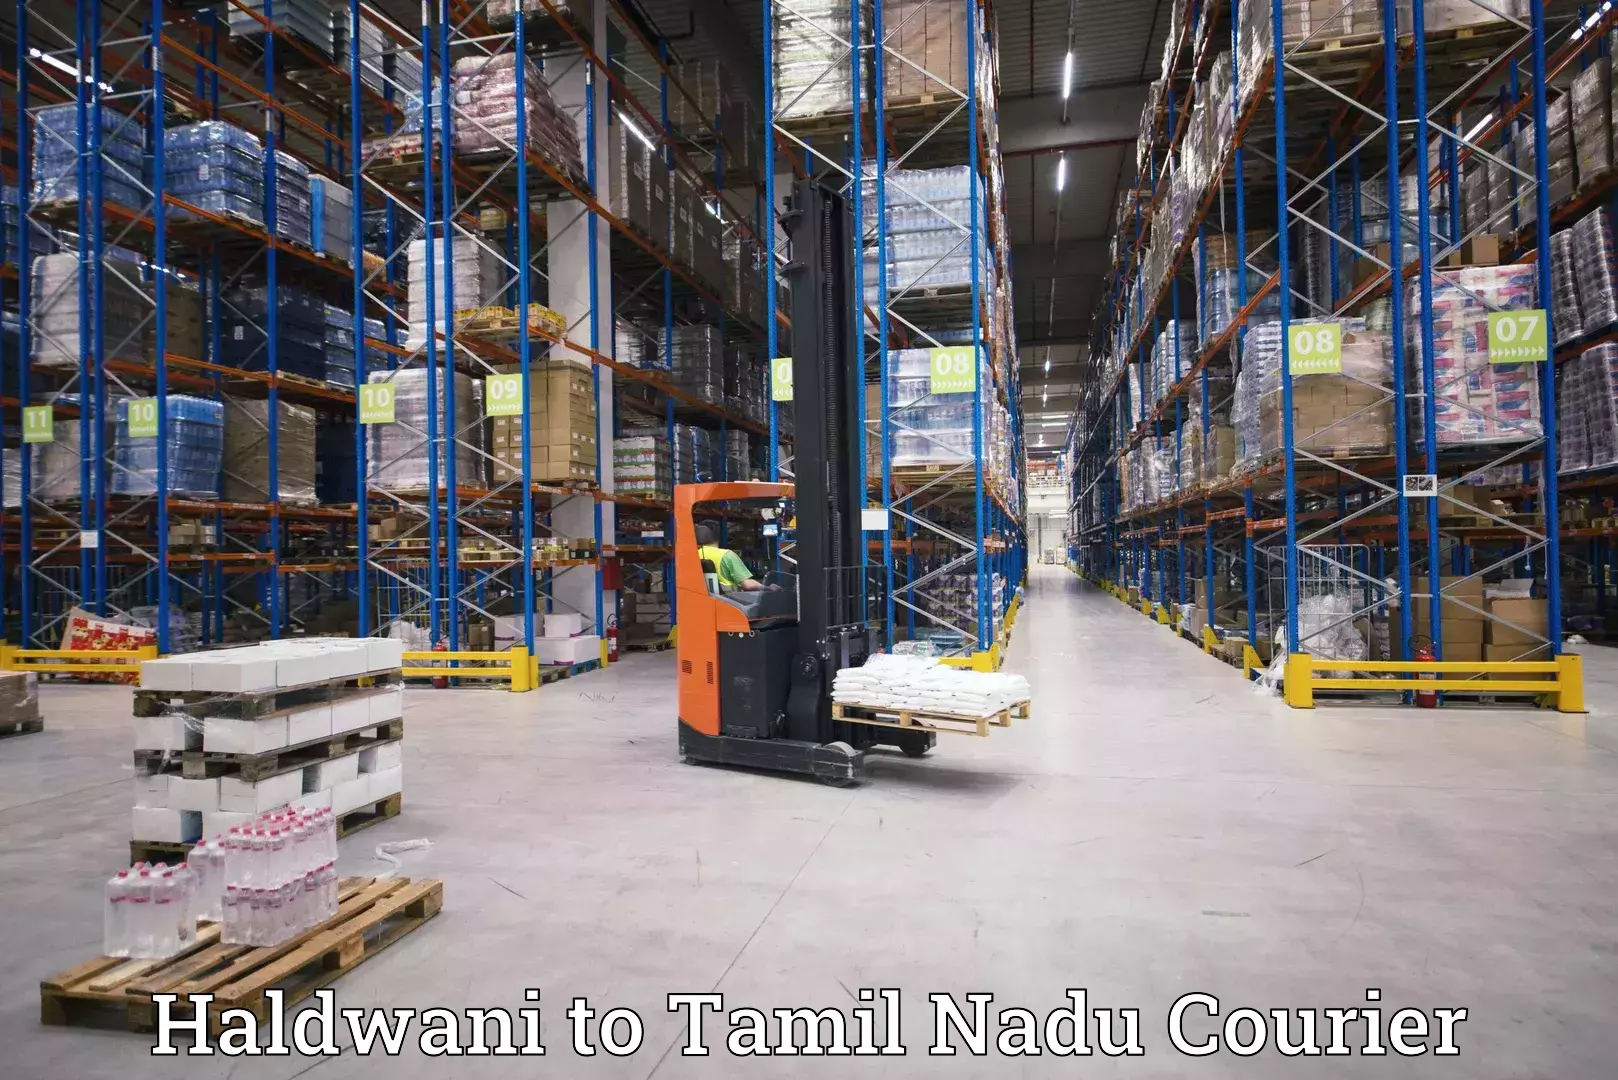 Advanced shipping network Haldwani to Tamil Nadu